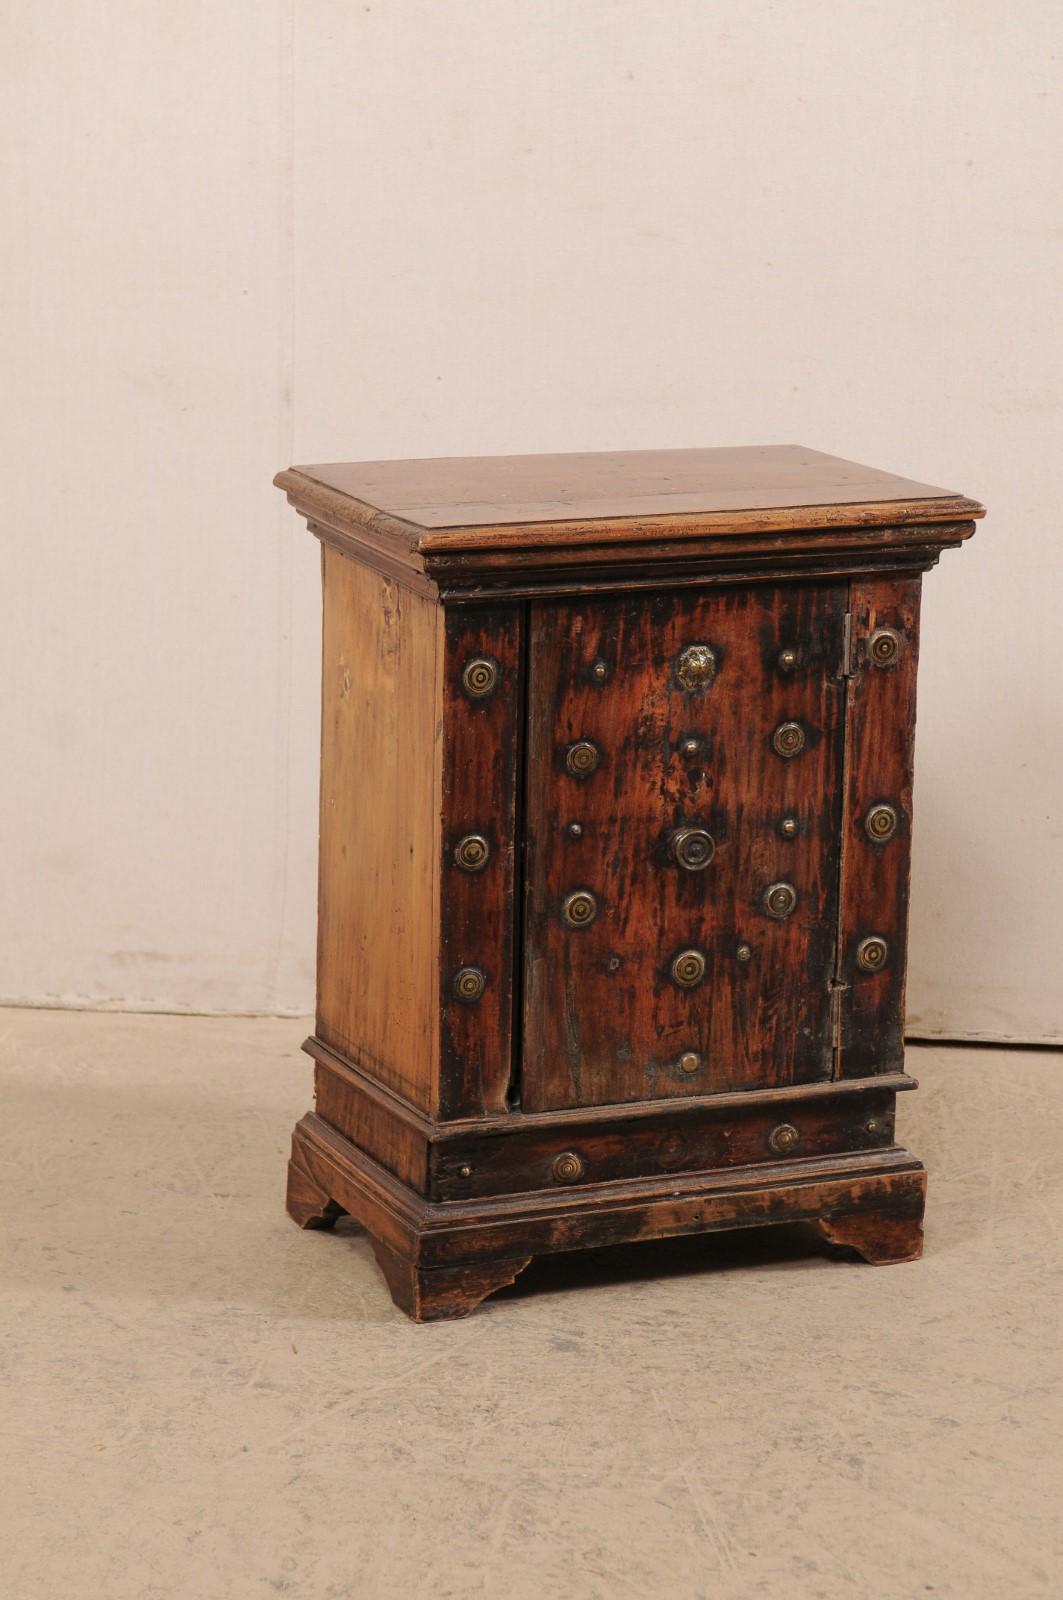 Une armoire italienne de petite taille en bois avec des accents en laiton du 18ème siècle. Ce meuble d'appoint antique d'Italie est magnifiquement décoré de nombreux médaillons en laiton sur sa face avant. Le plateau de forme rectangulaire est moulé